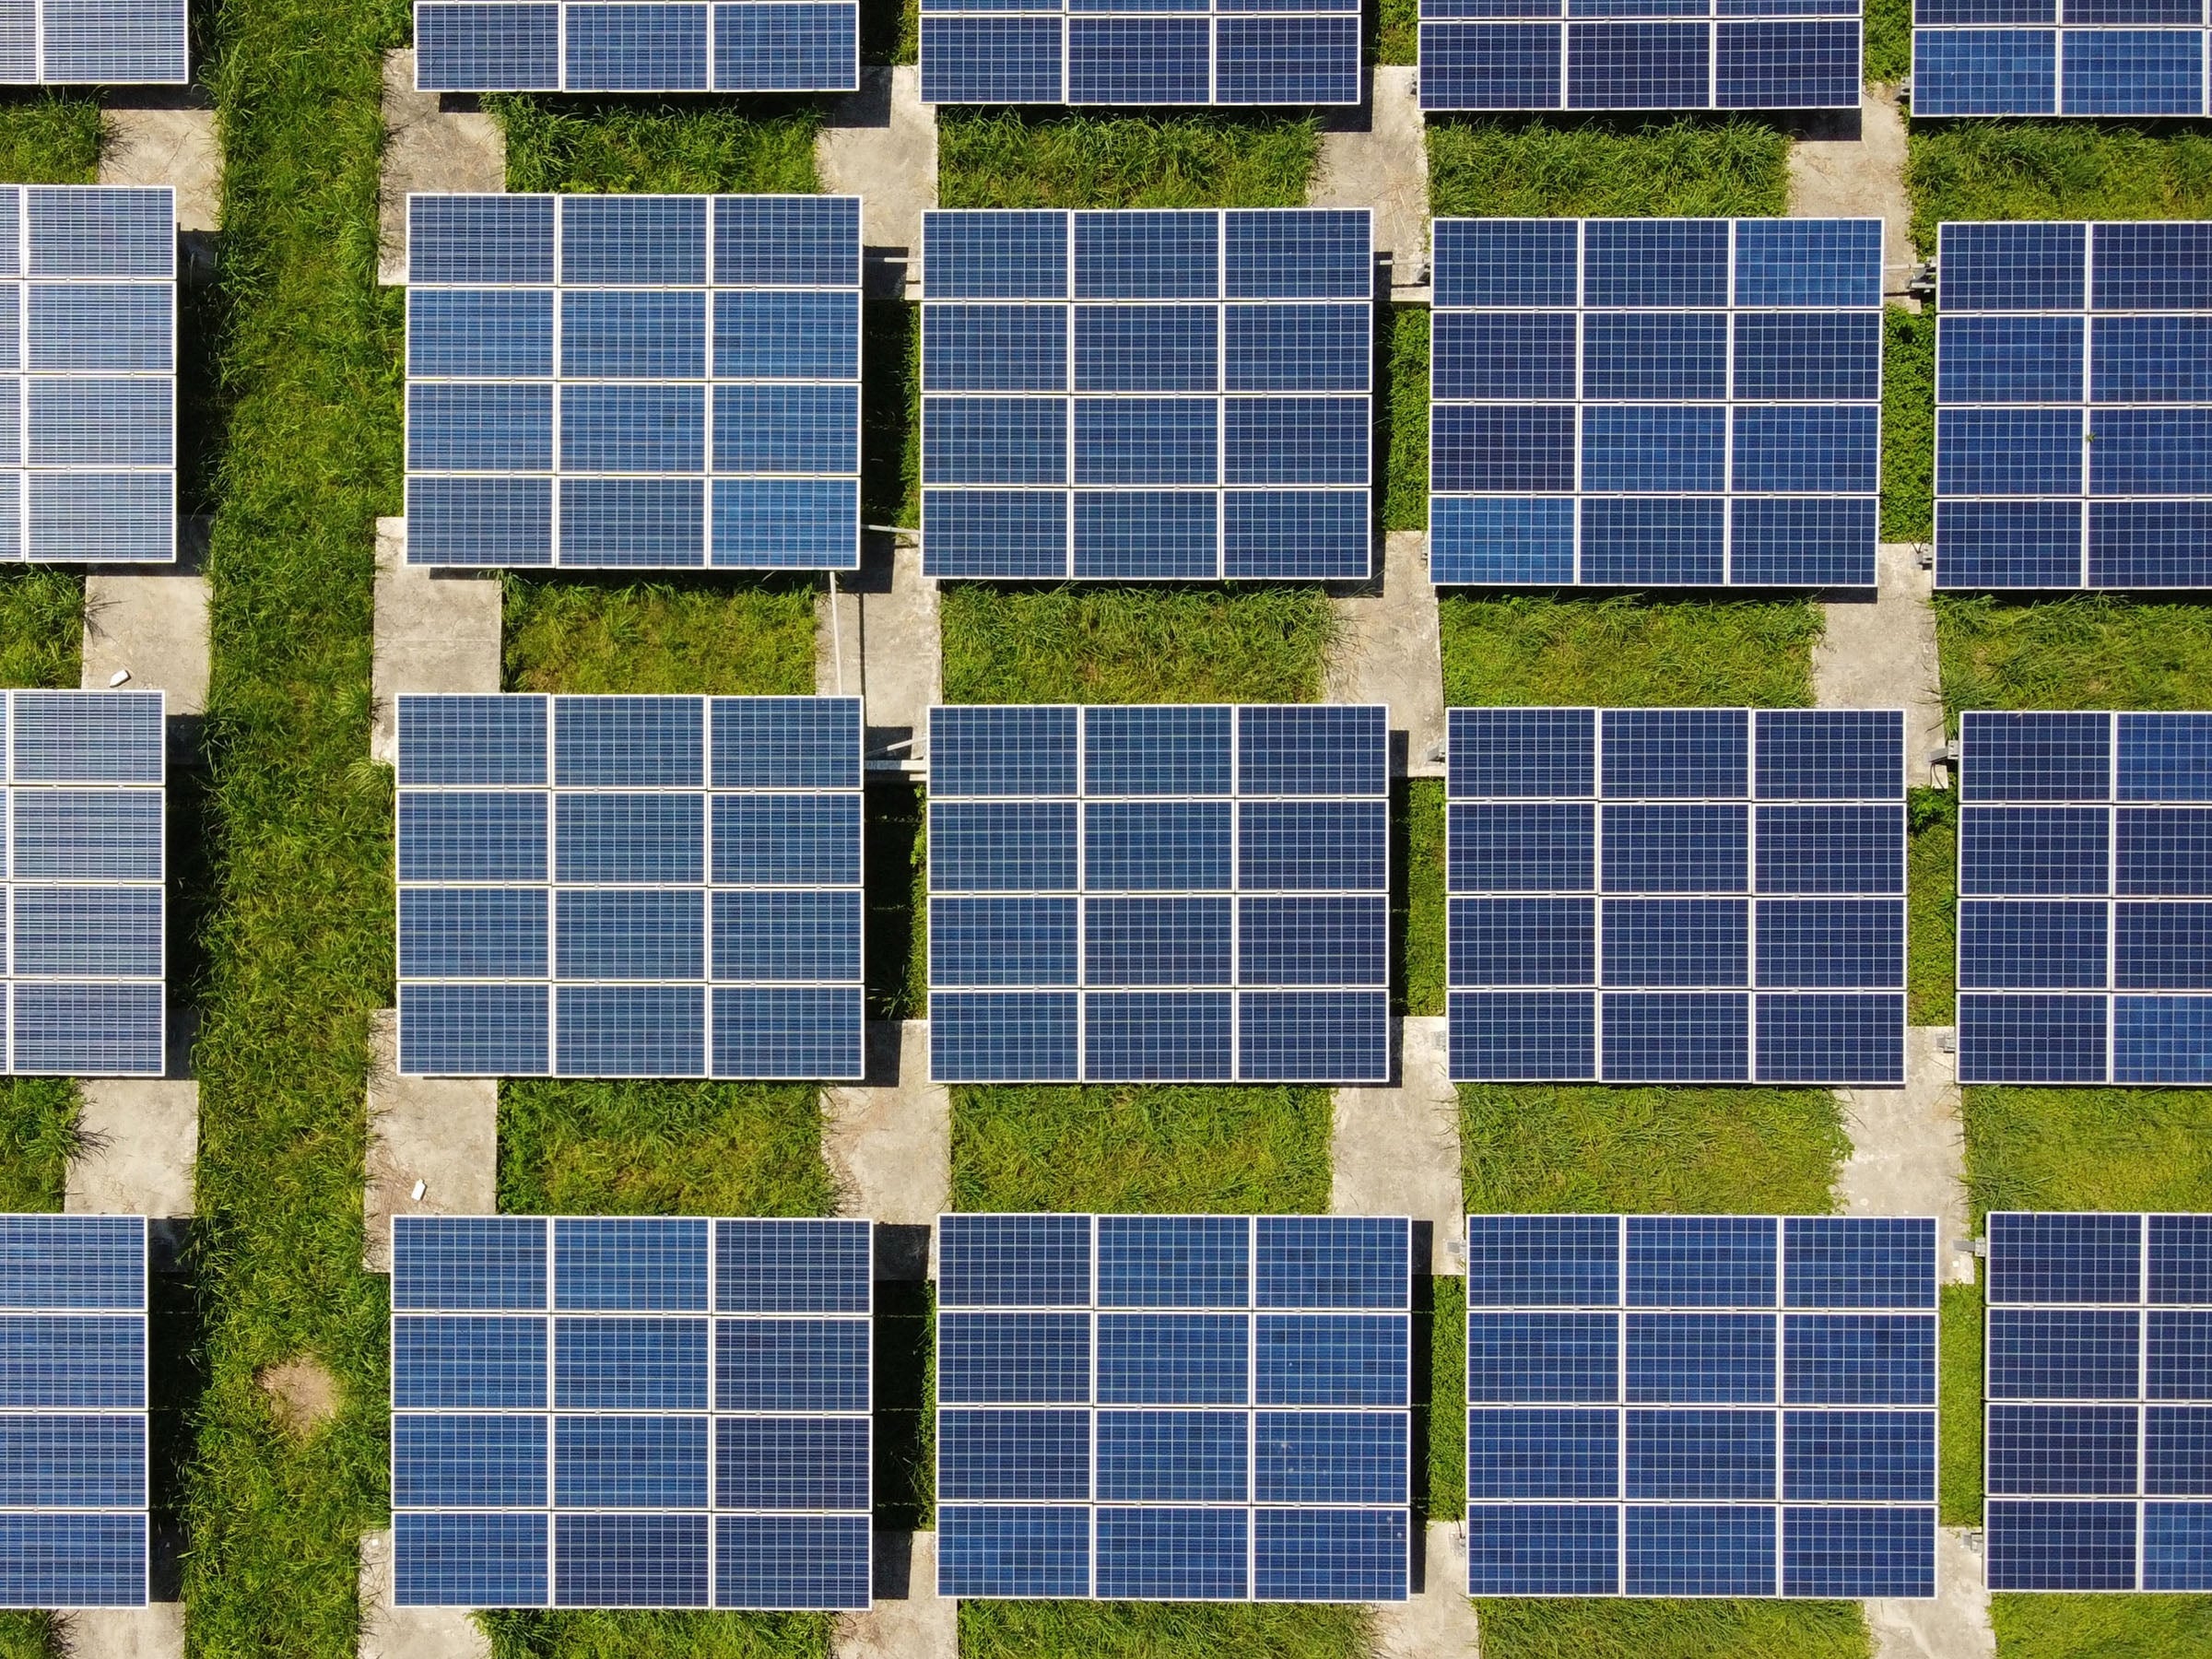 Strom vom Dach: Lohnt sich eine eigene Photovoltaikanlage? I Ökochecker SWR  